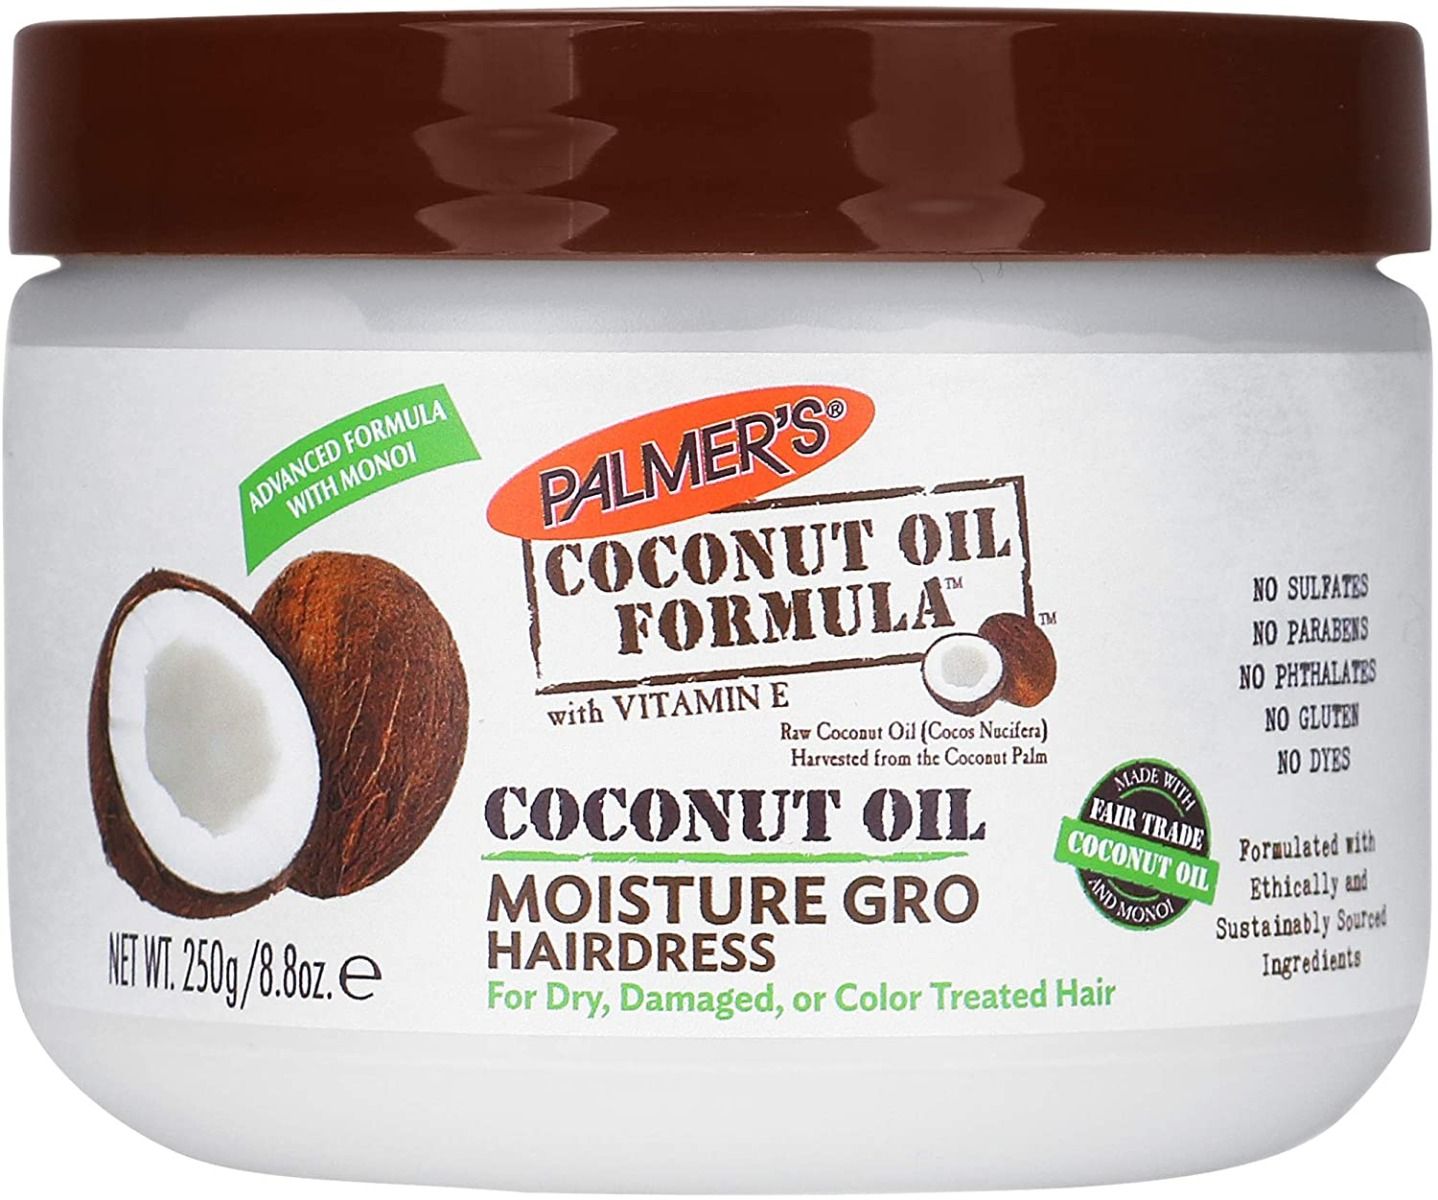 Palmer's Coconut Oil Moisture Gro Hairdress